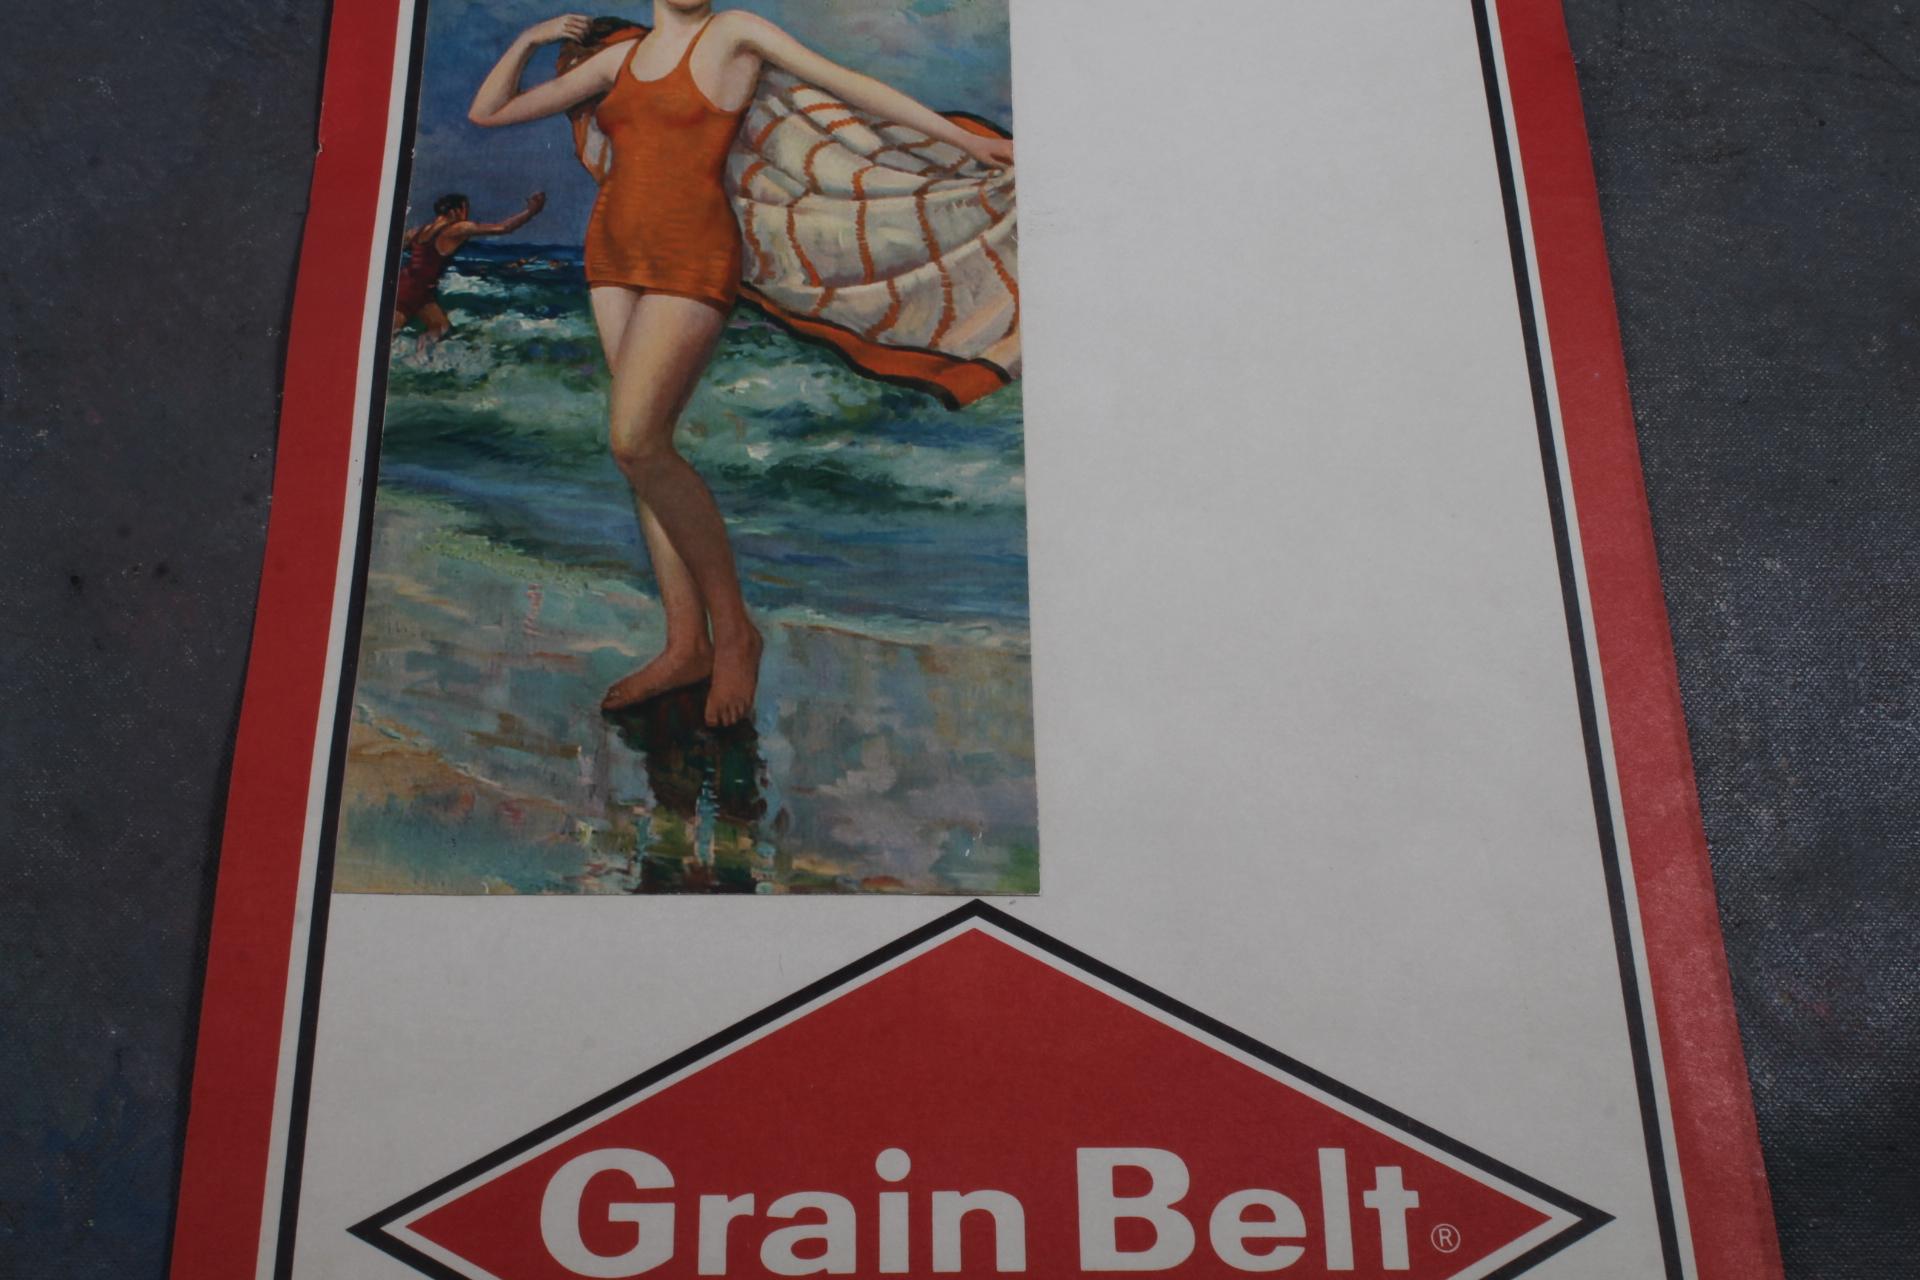 1977 Grain Belt Beer Pin-Up Swimsuit Model Paper Sign Measures 22" x 10"